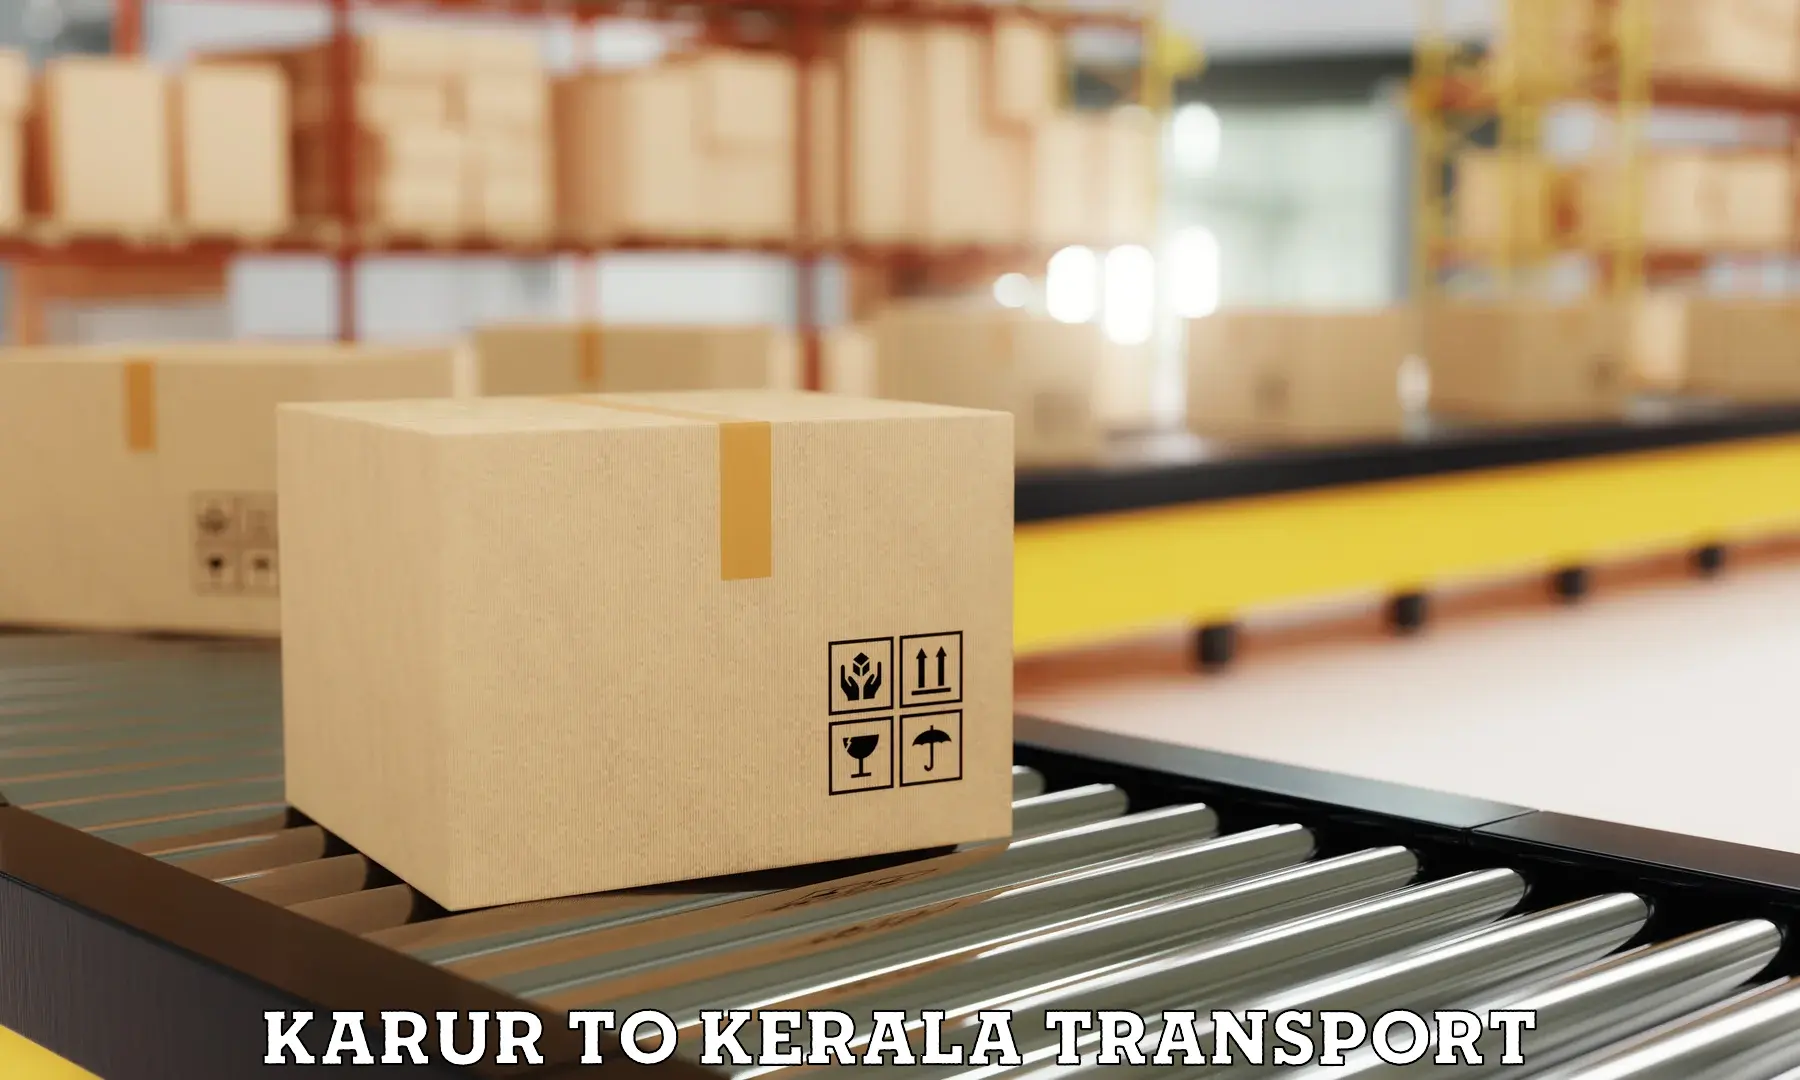 Furniture transport service Karur to Pala